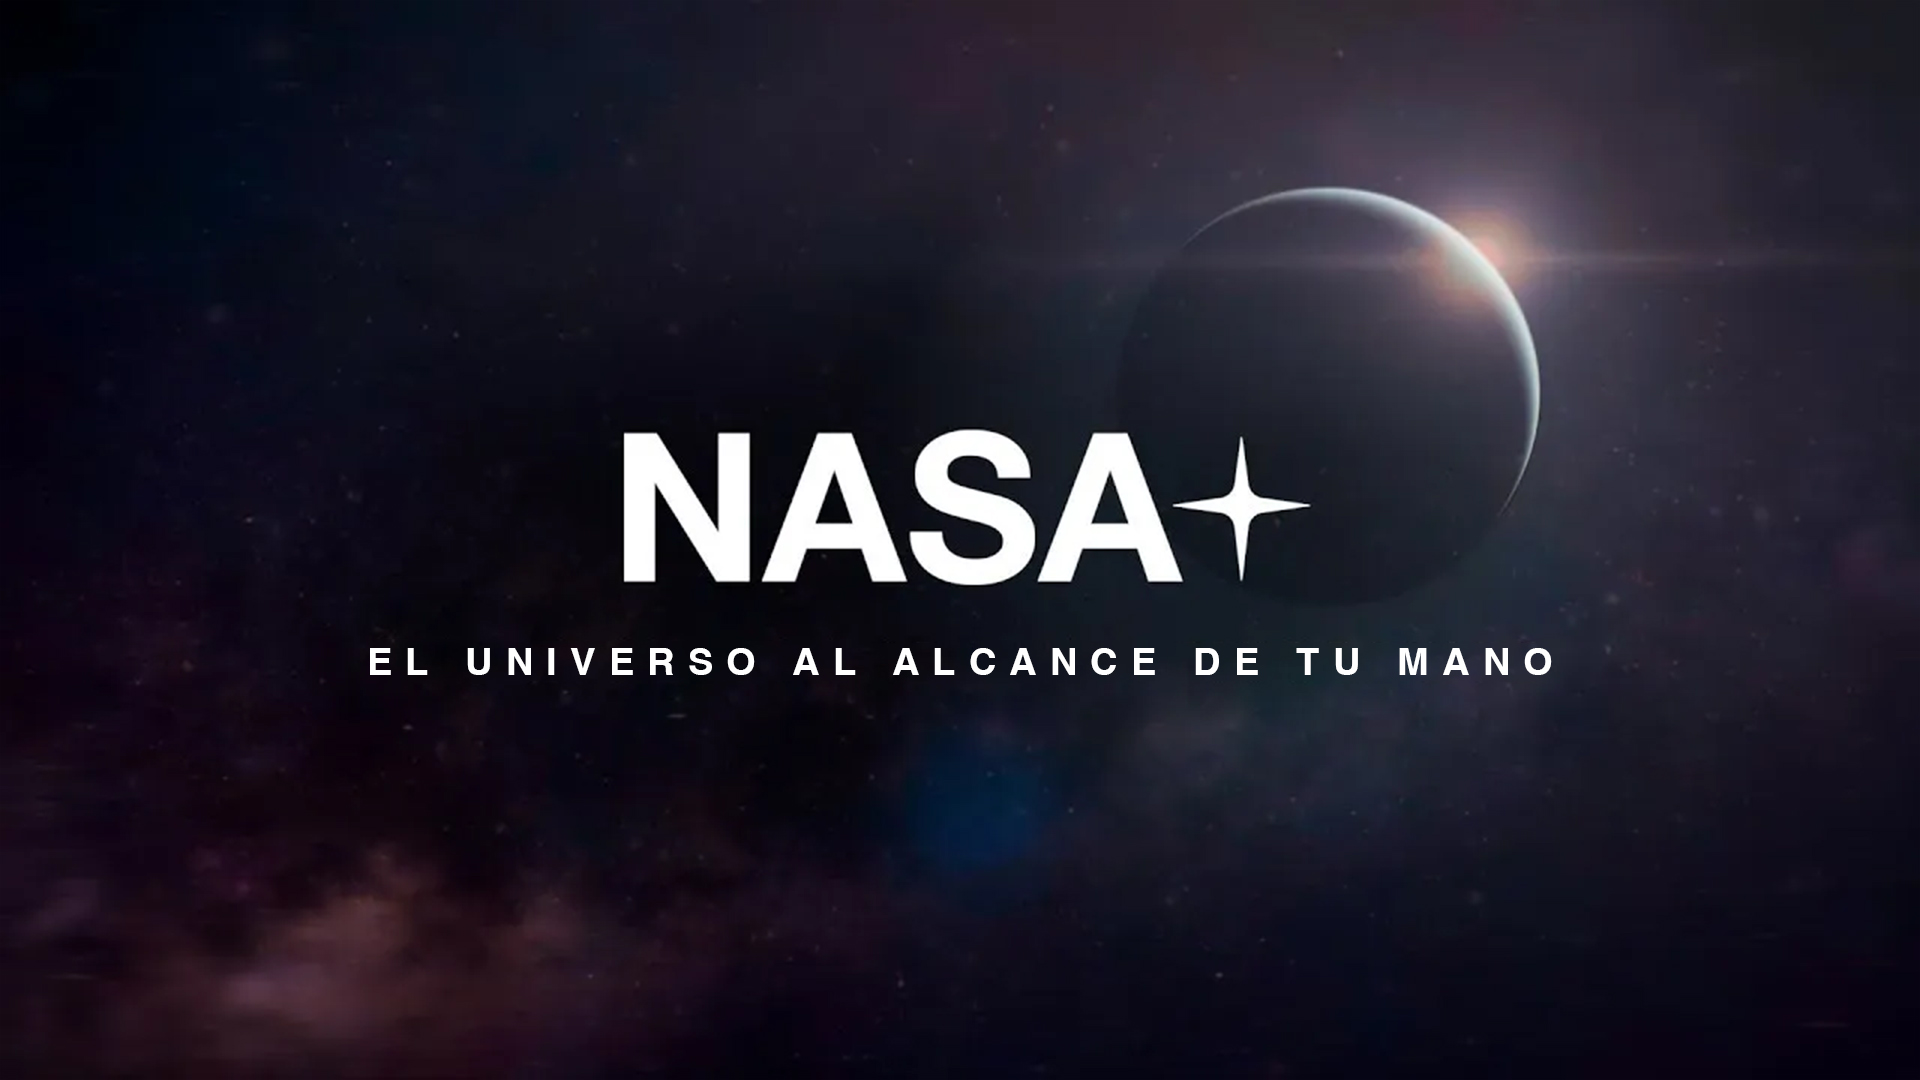 La NASA lanza su primer servicio de programación a la carta - NASA